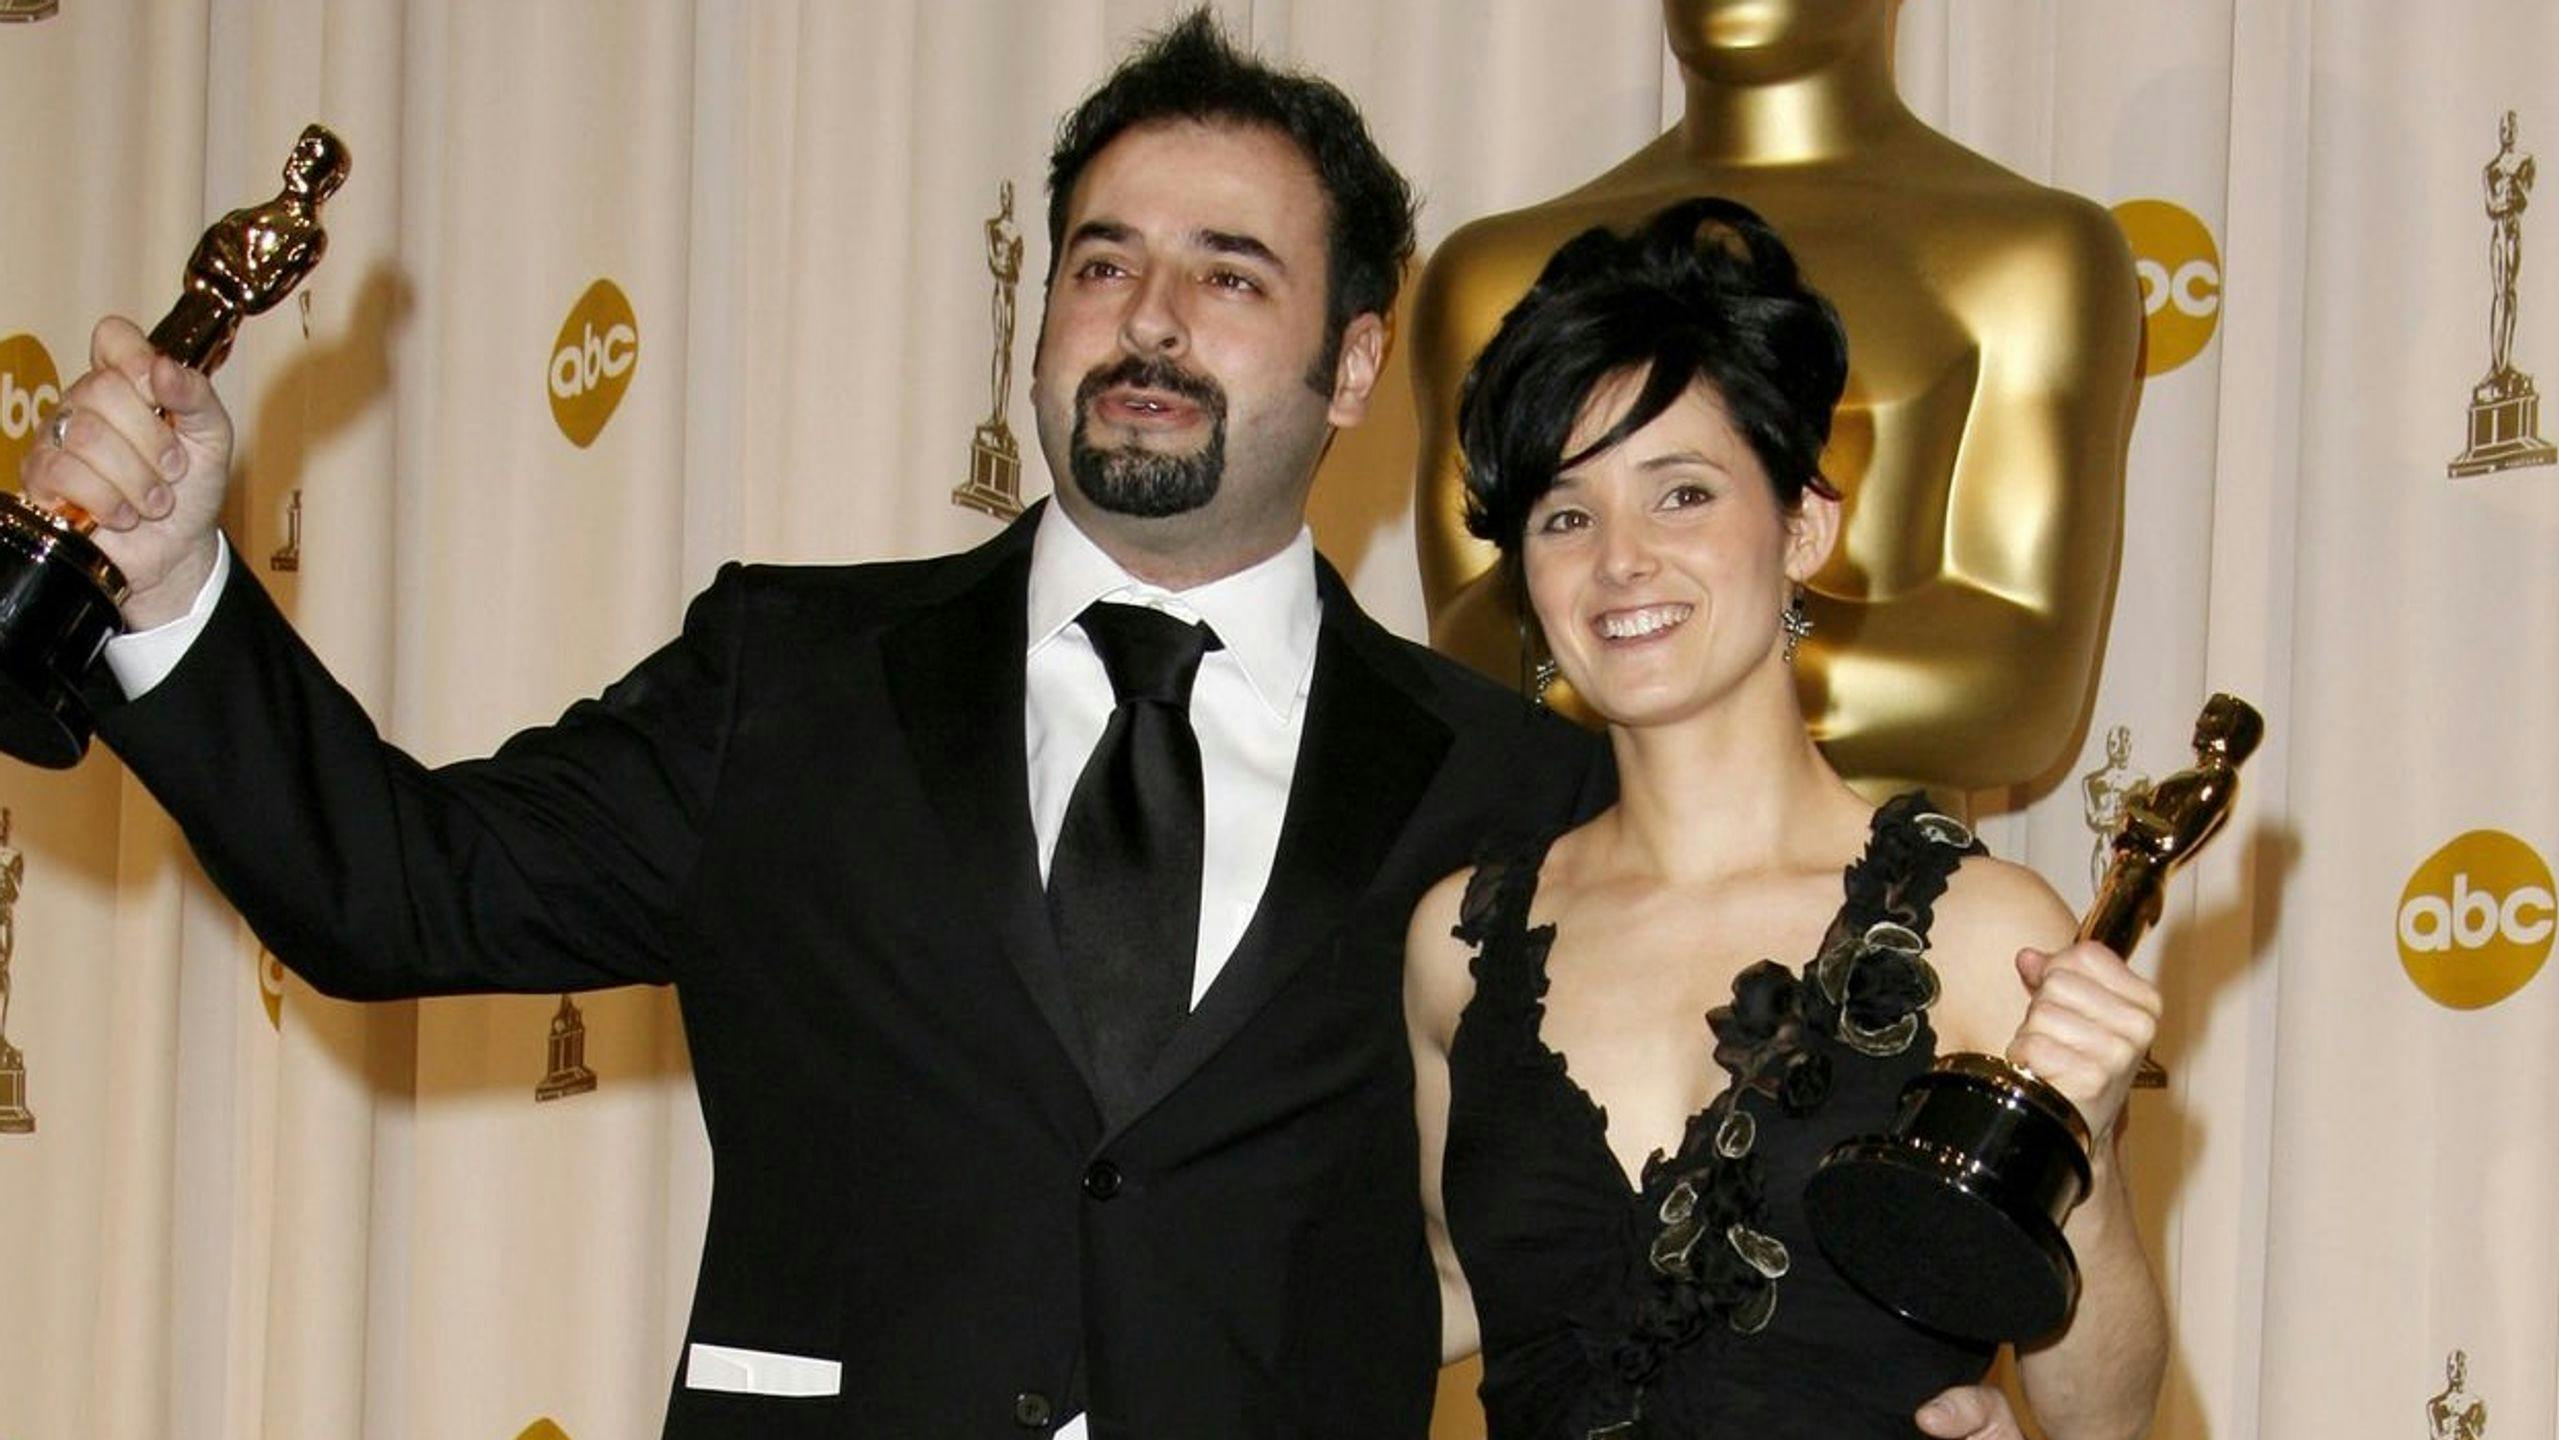 David Martí y Montse Ribé posan con su Oscar a Mejor Maquillaje y Peluquería por 'El laberinto del fauno' en 2007